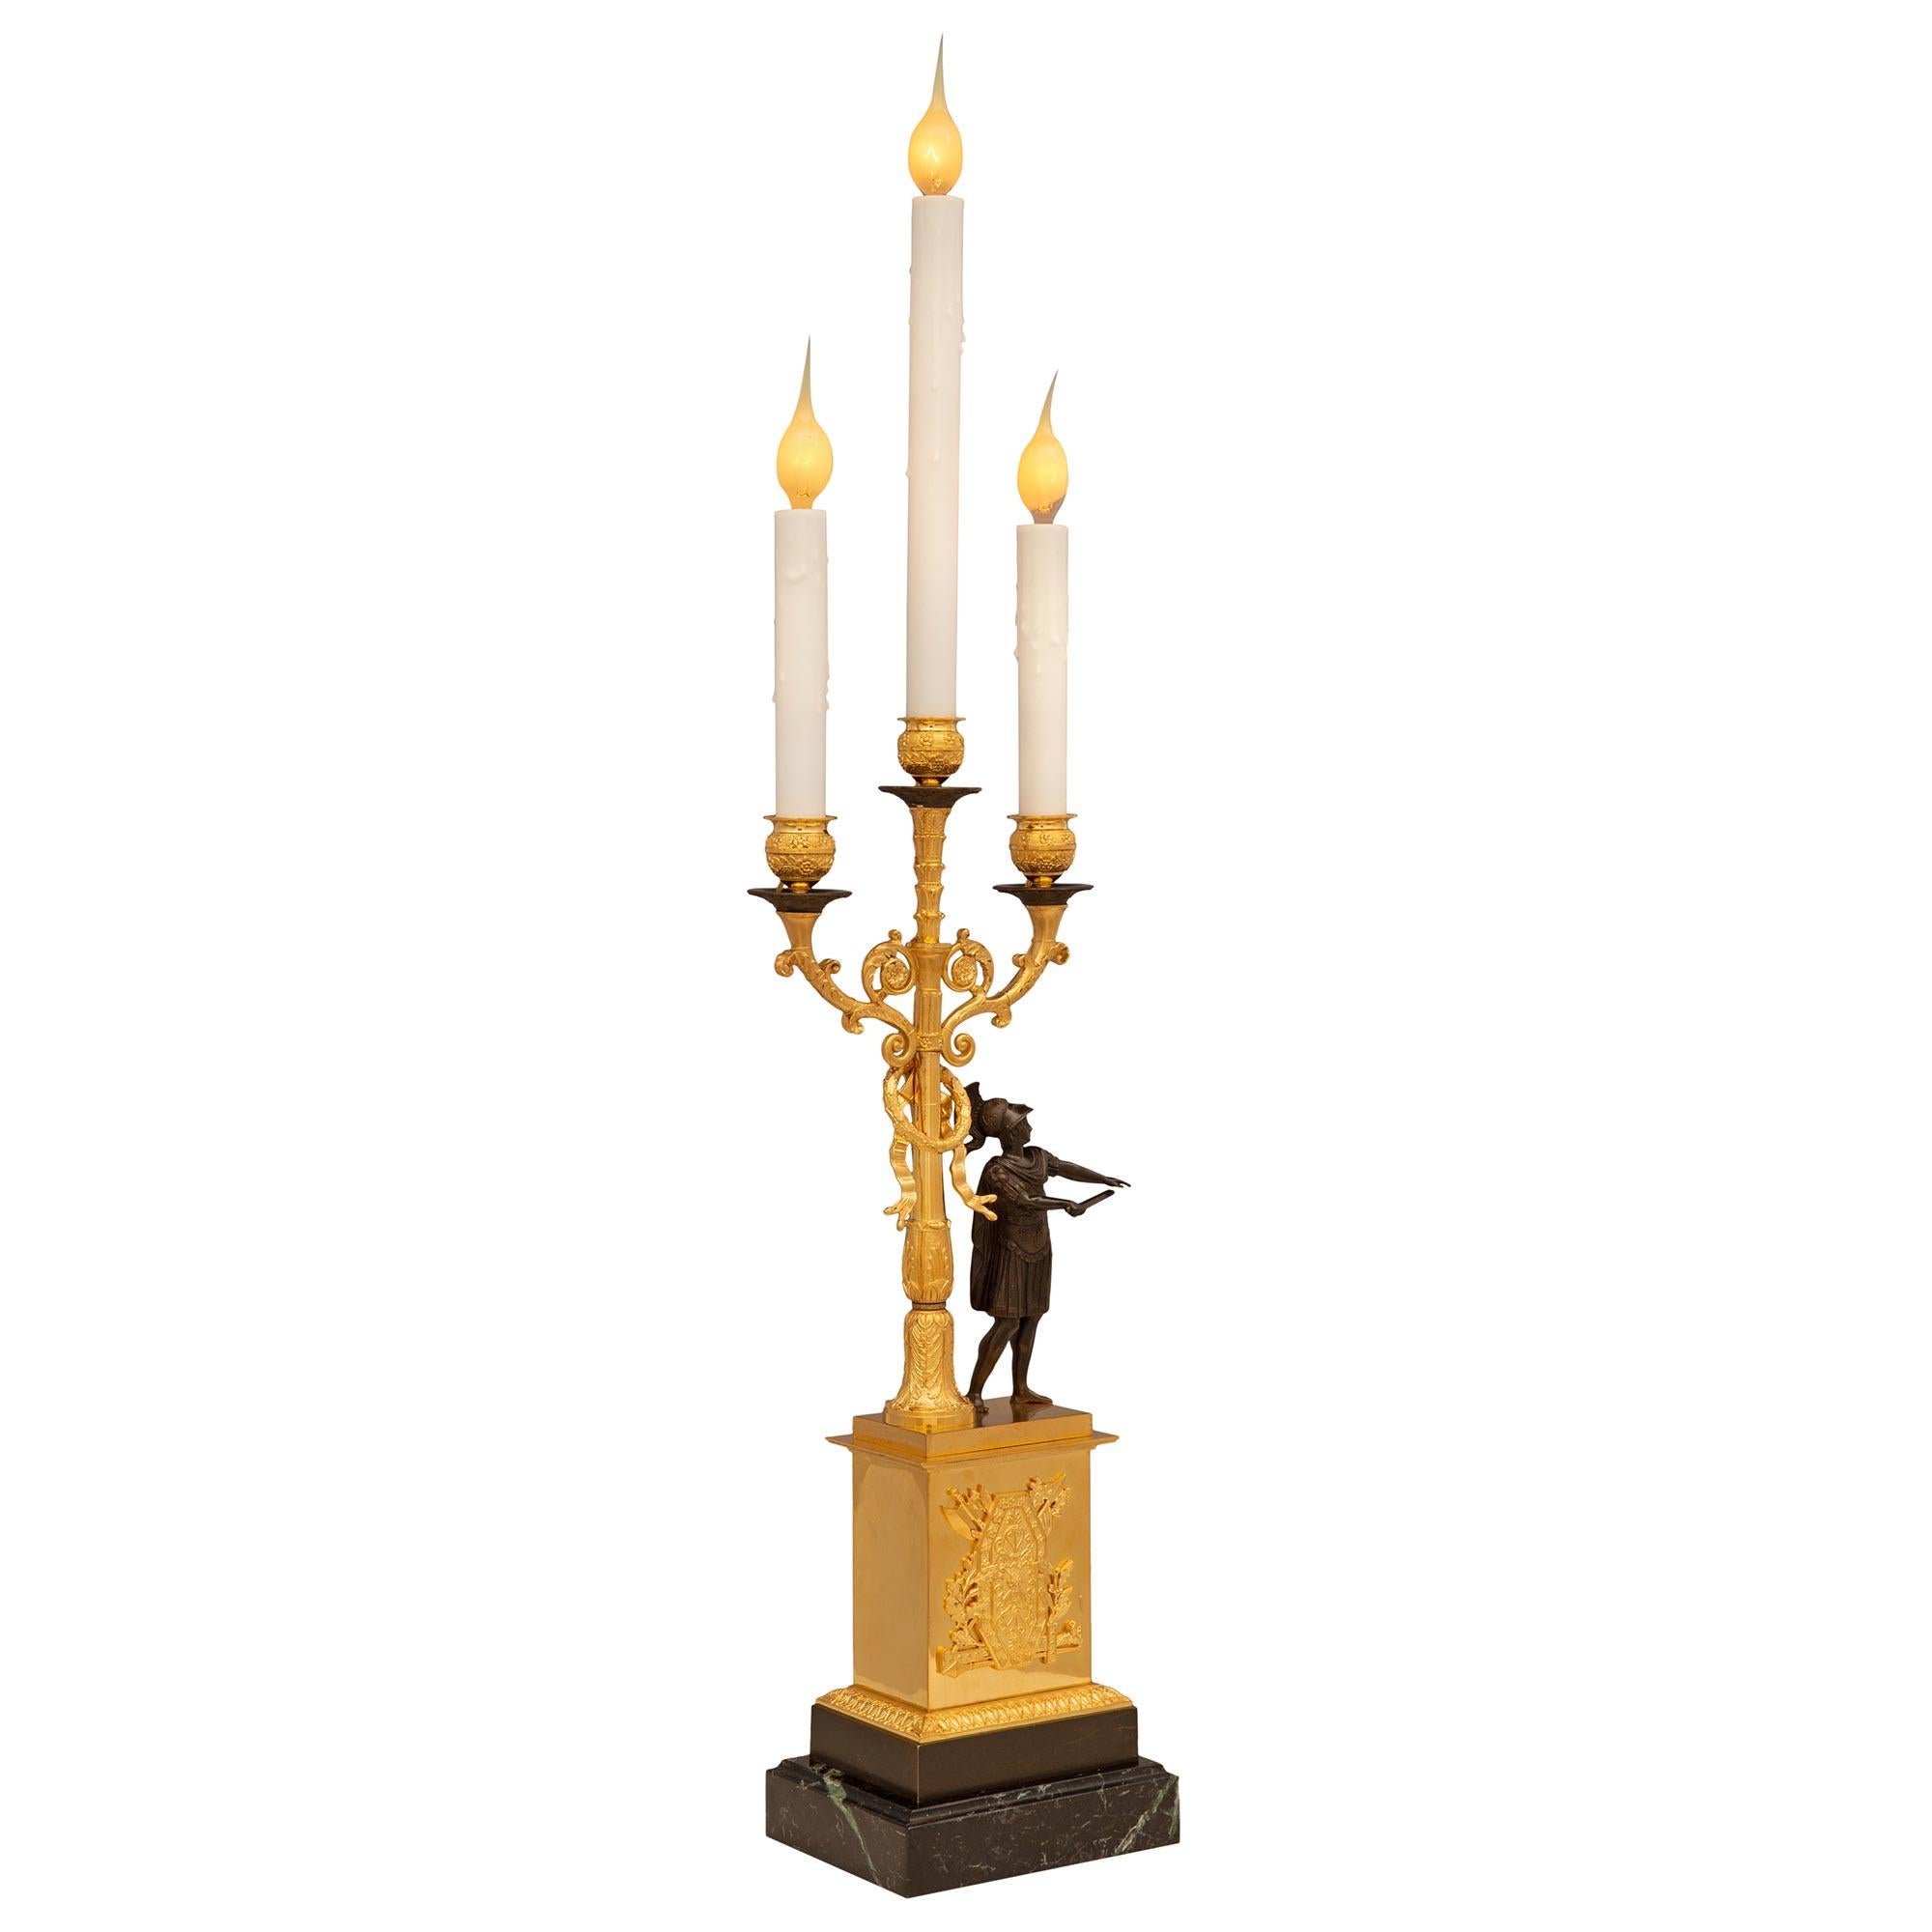 Ein bemerkenswertes Paar französischer neoklassizistischer St. Ormolu-Lampen aus dem 19. Jahrhundert, patinierte Bronze und Vert de Patricia-Marmor. Jeder dreiarmige Kandelaber steht auf einem rechteckigen Sockel aus Vert de Patricia mit einer fein